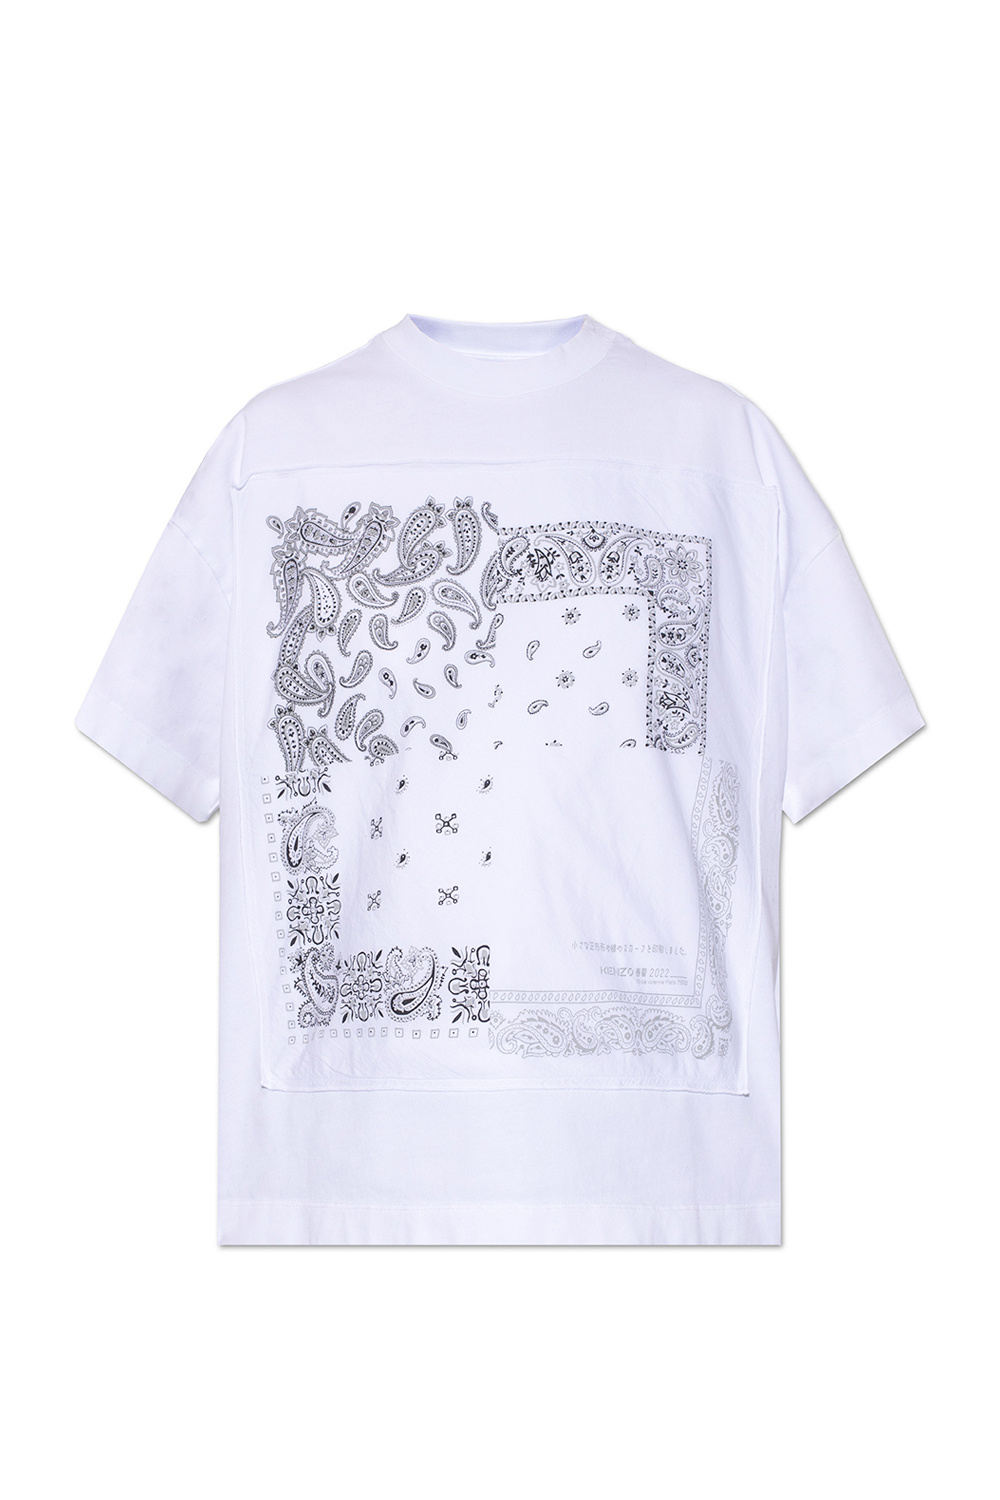 Kenzo Bandana print T-shirt, Women's Clothing